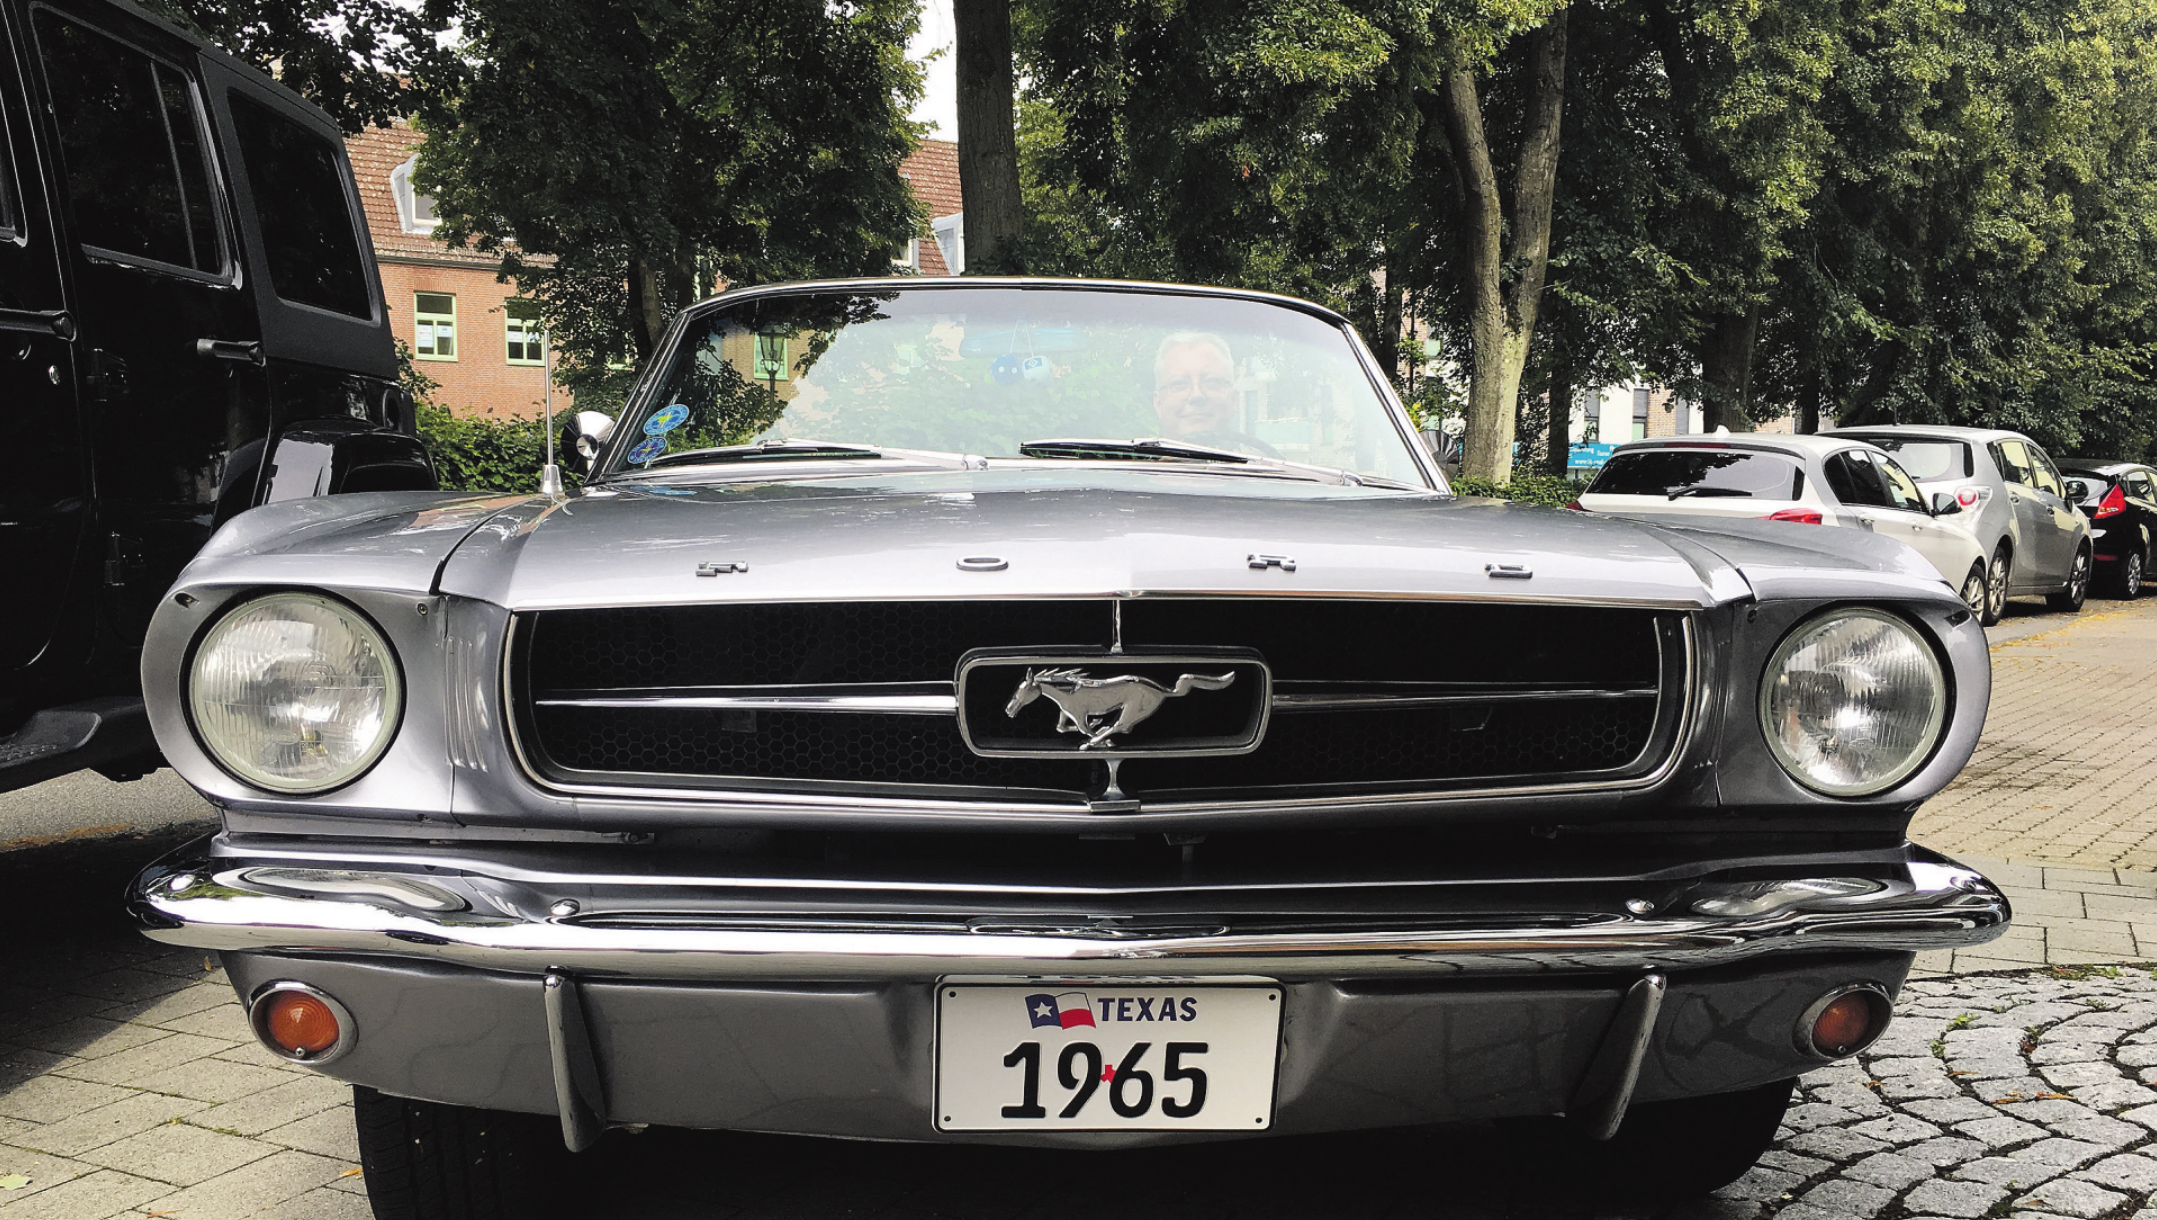 Beim US-Car- & Oldtimer-Treffen am Sonnabend, 14. September, in Bargteheide werden auch dieser schnittige, 54-jährige Ford Mustang und sein Fahrer Martin Wettering anzutreffen sein